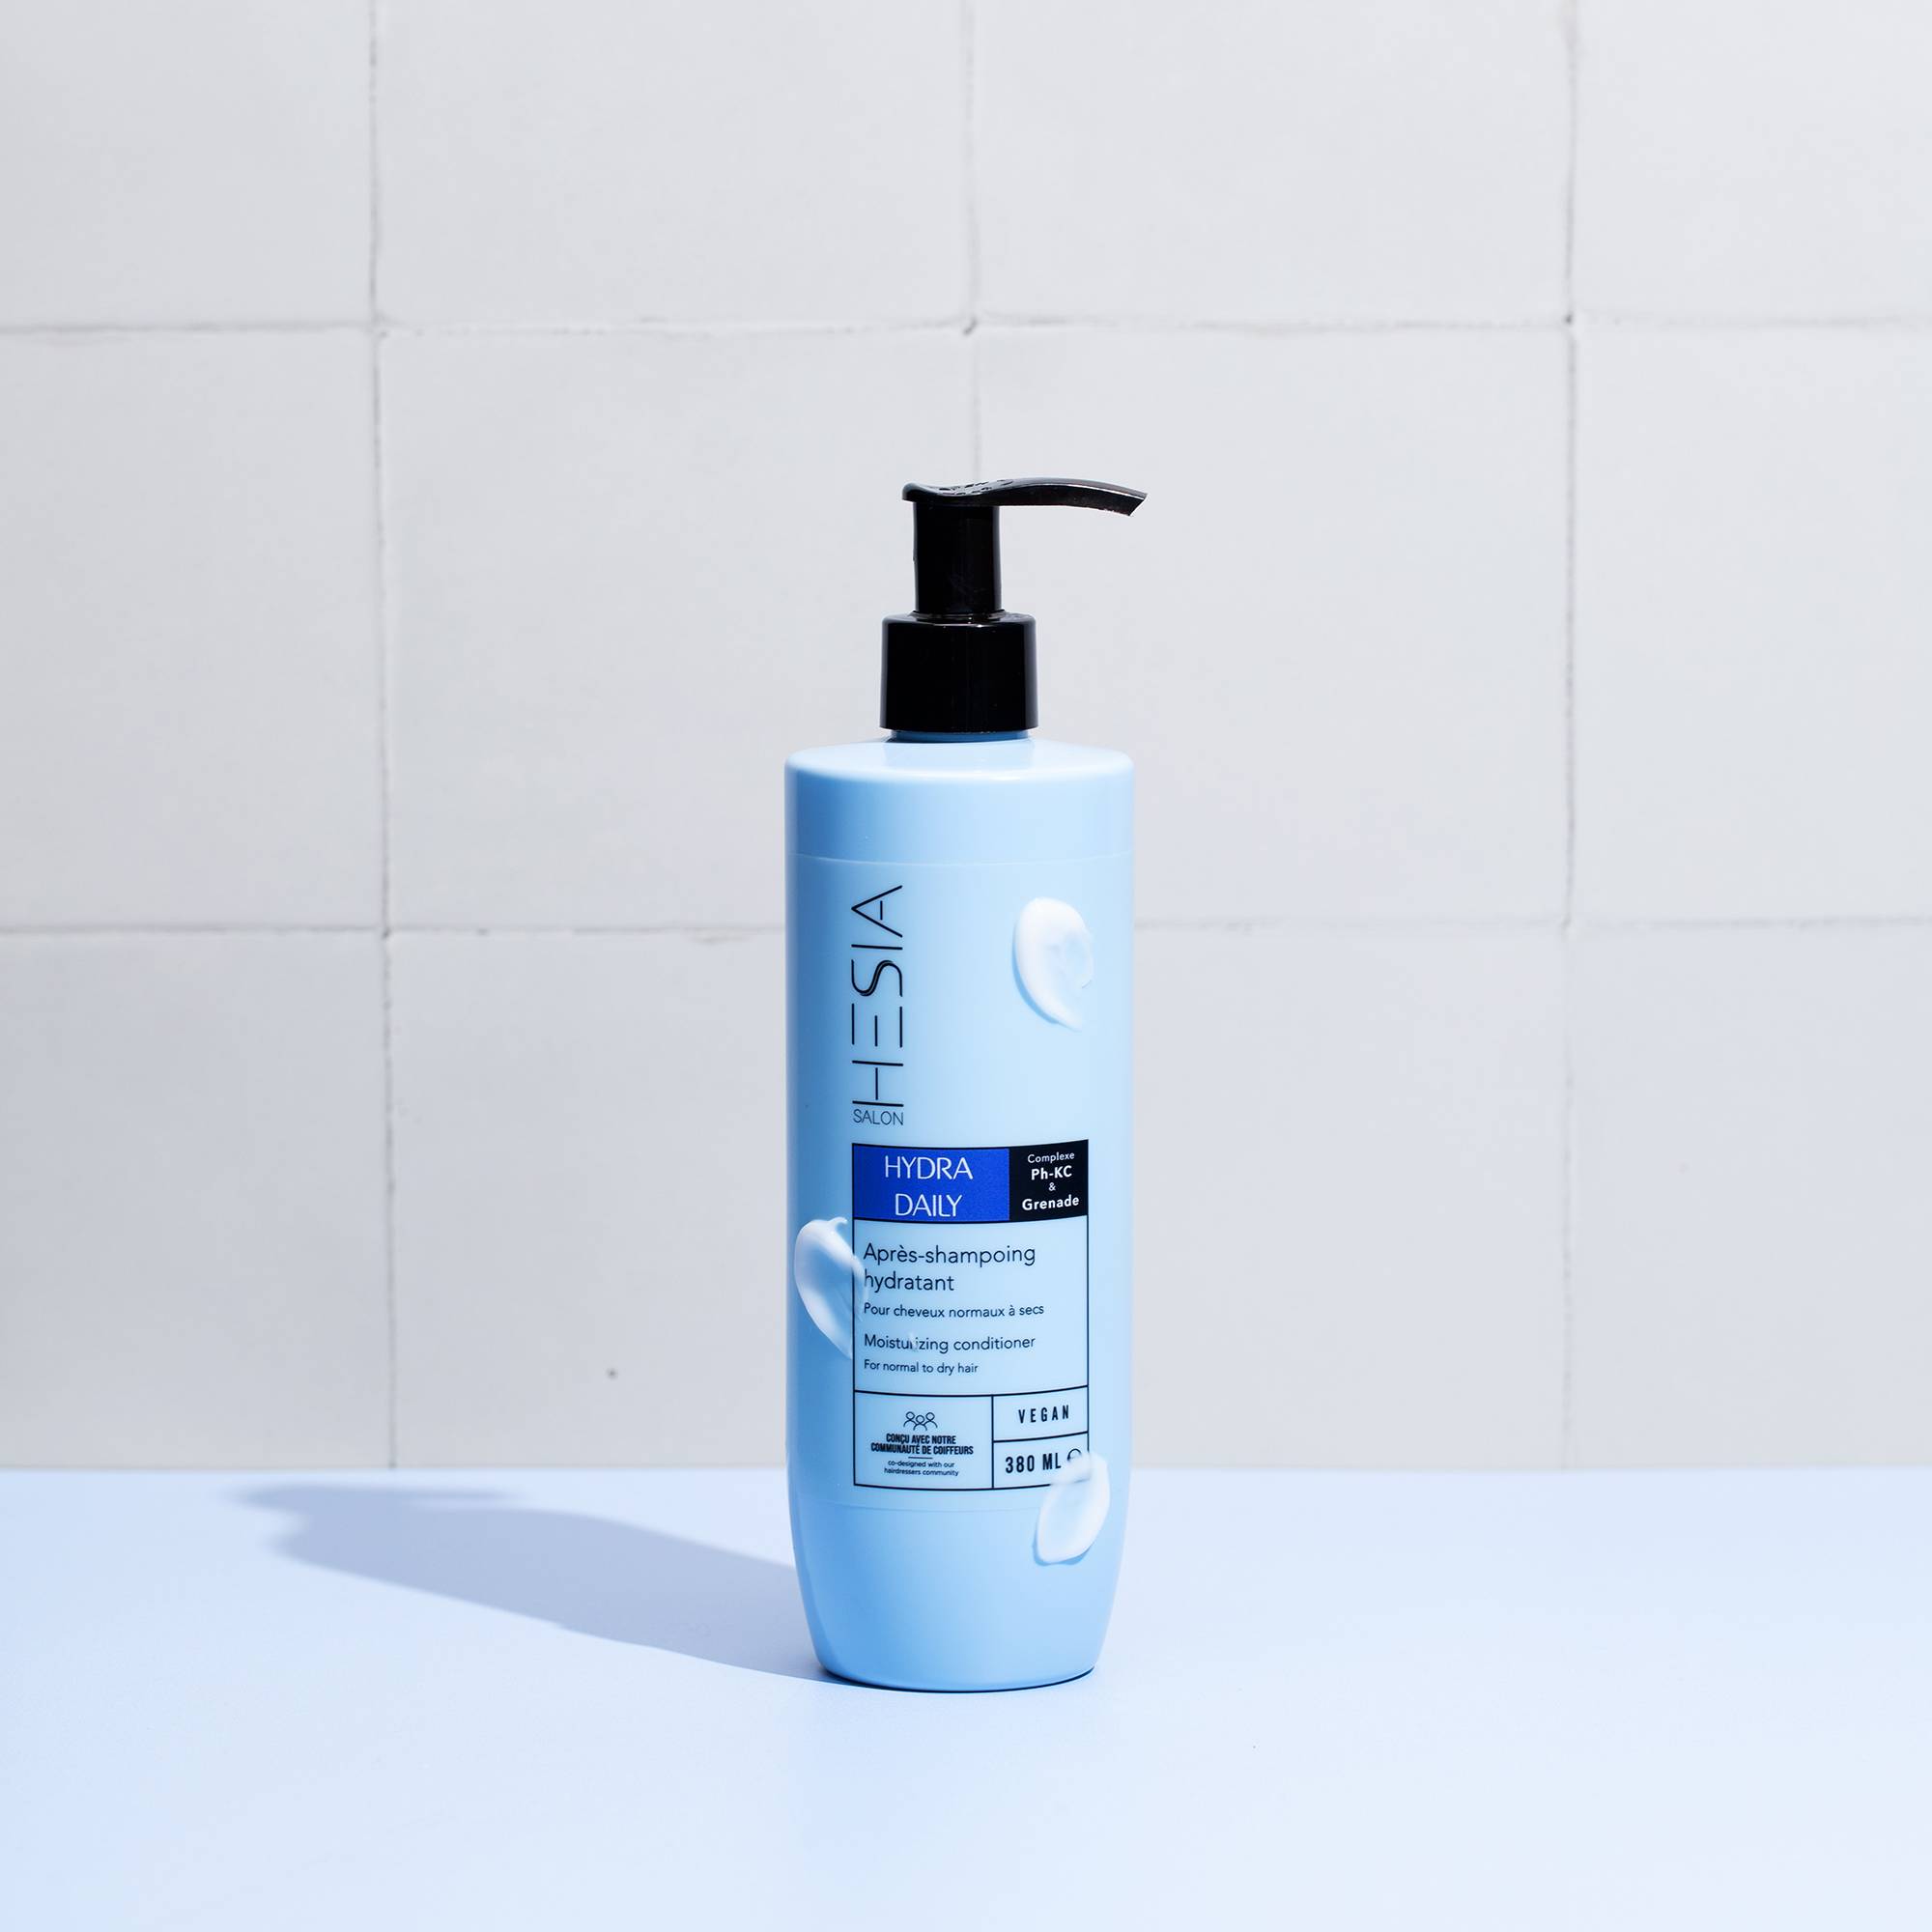 Après-shampoing hydratant Hydra Daily de la marque HESIA Salon Contenance 380ml - 3